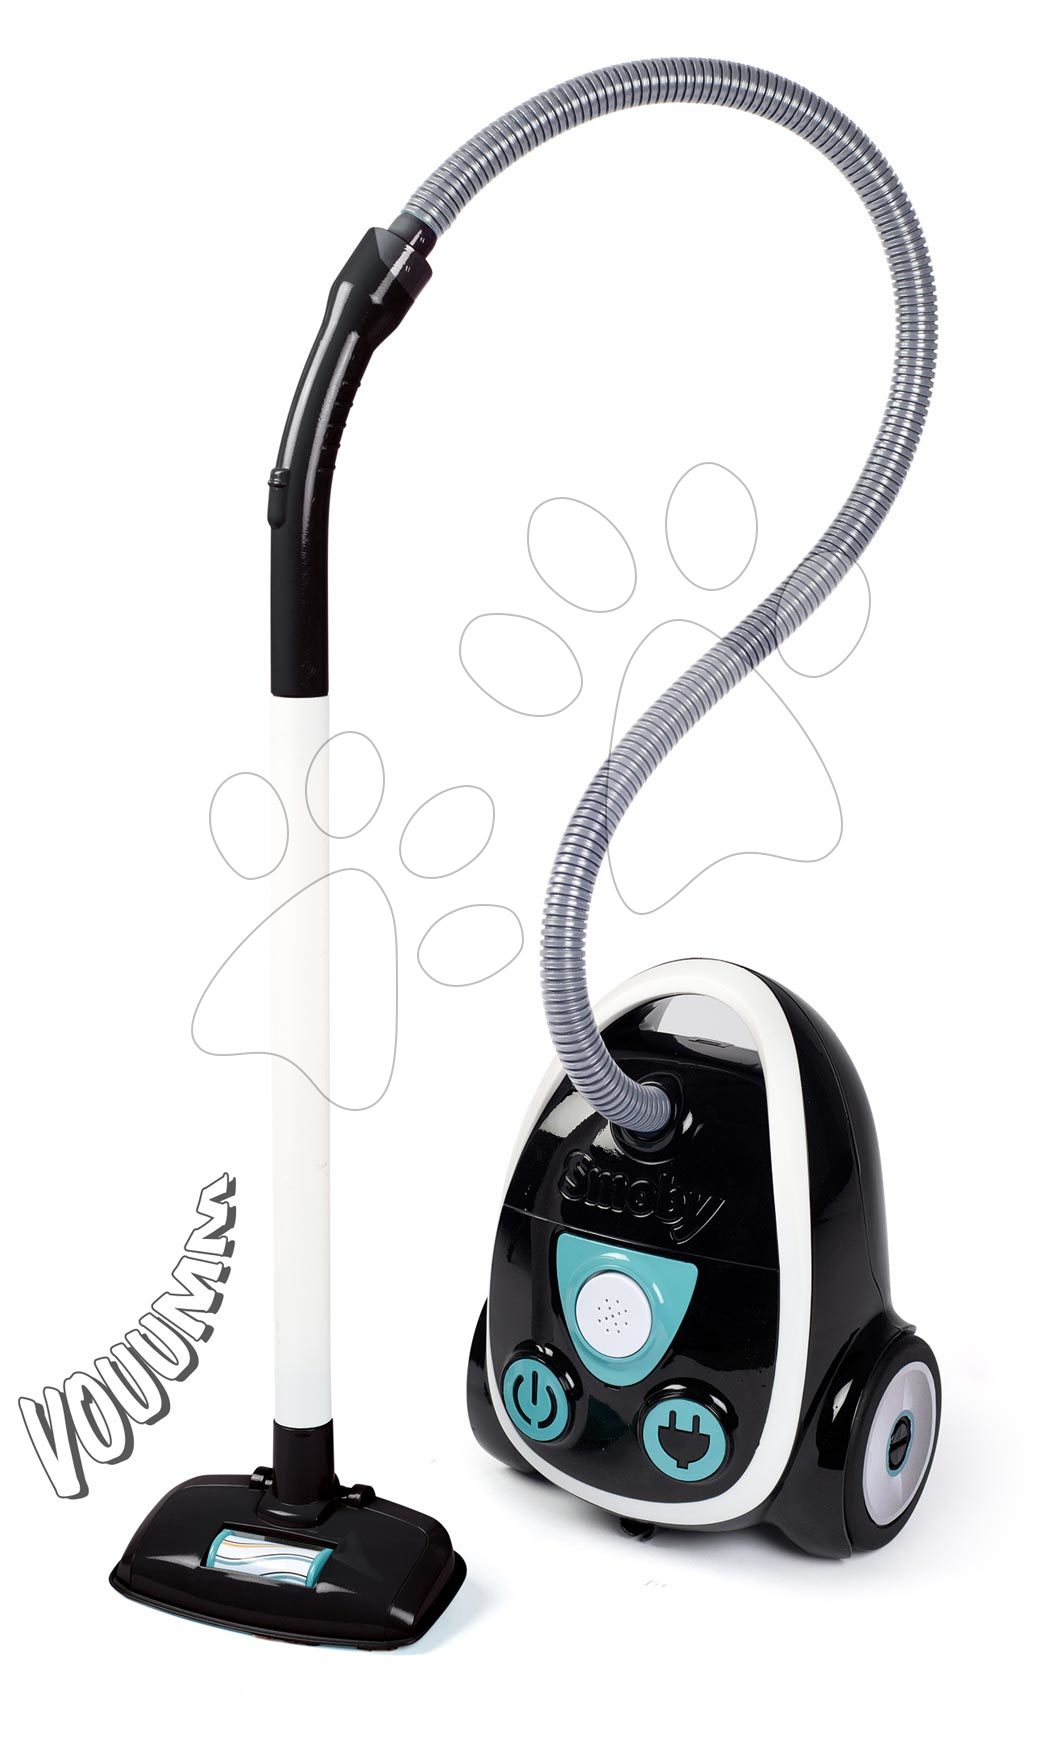 Hry na domácnost - Vysavač elektronický Vacuum Cleaner Smoby s reálným zvukem vysávání